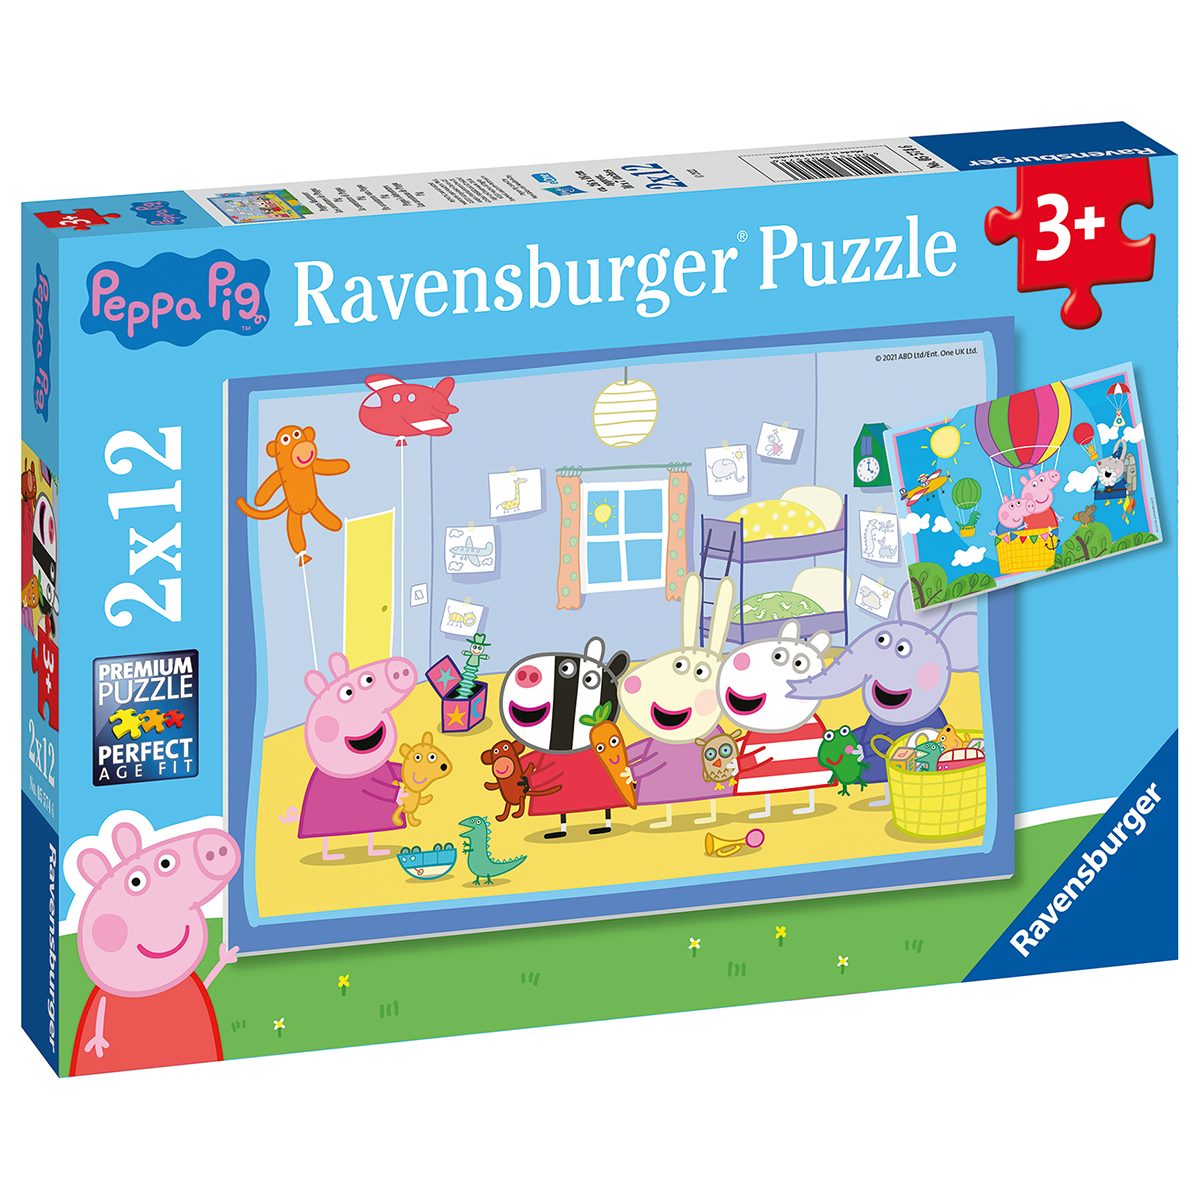 Ravensburger 2 puzzle 12 pezzi per bambini dai 3 anni - peppa pig - PEPPA PIG, RAVENSBURGER